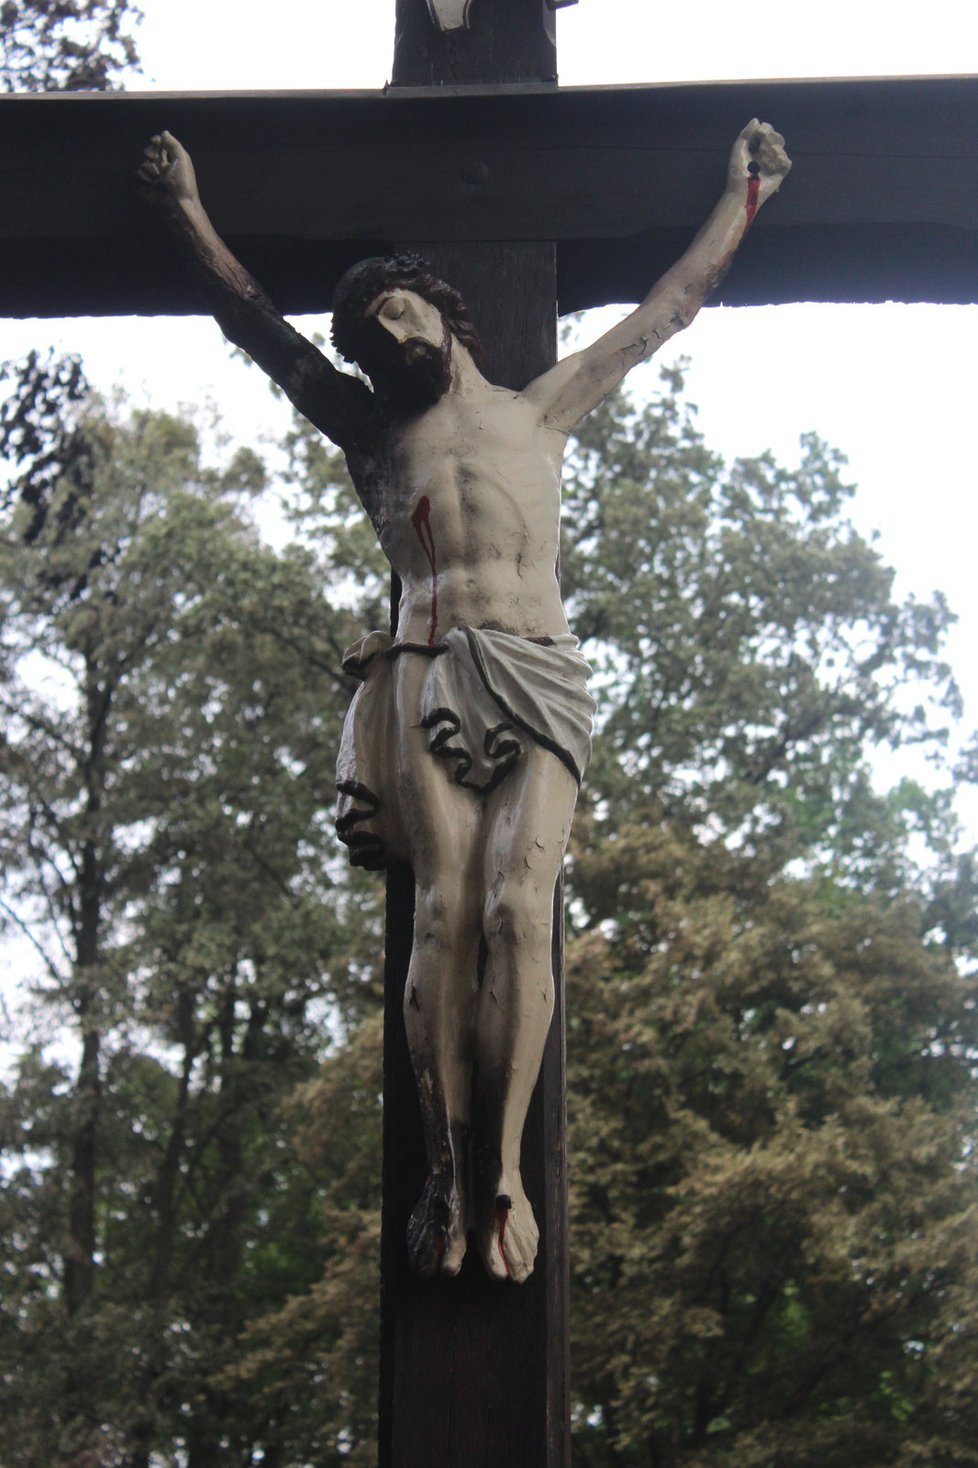 Kříž s Ježíšem je částečně ohořelý taky. Zůstal však i po požáru na svém místě a nezbortil se.